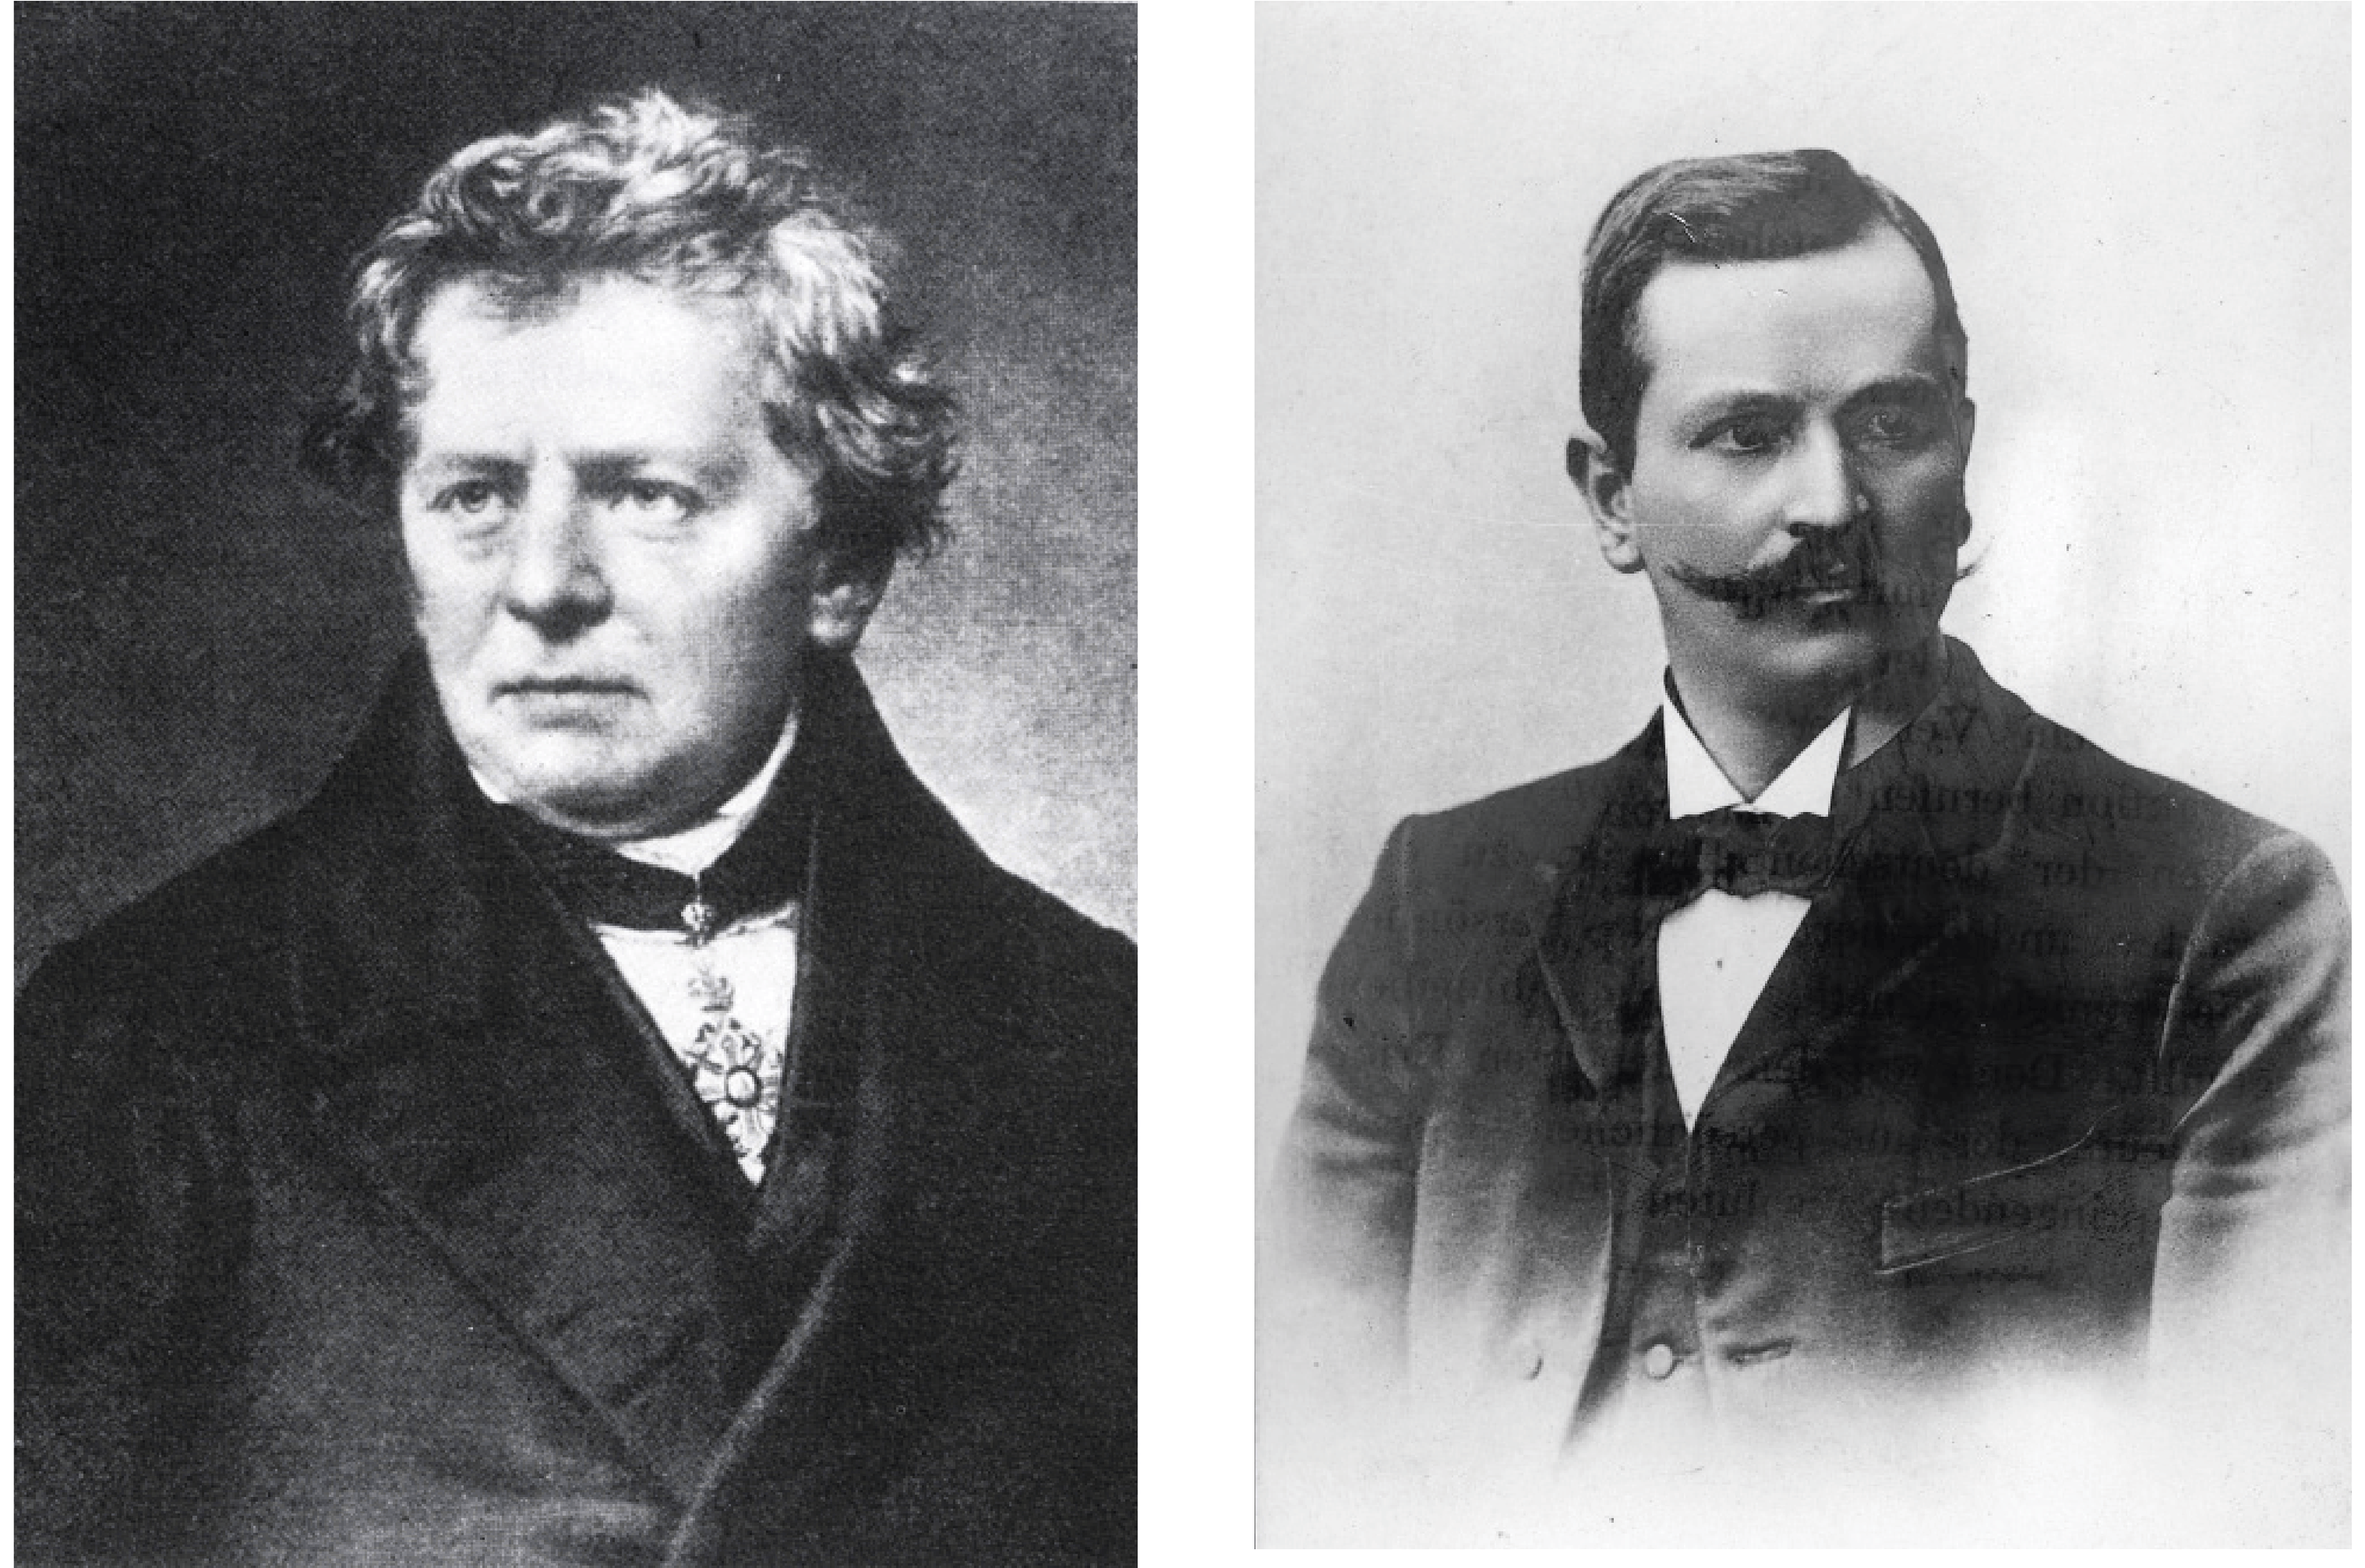 ▲ Georg Ohm (1789-1859), à gauche, a découvert la loi qui porte son nom, et Paul Drude (1863-1905), à droite, en a proposé une explication théorique.